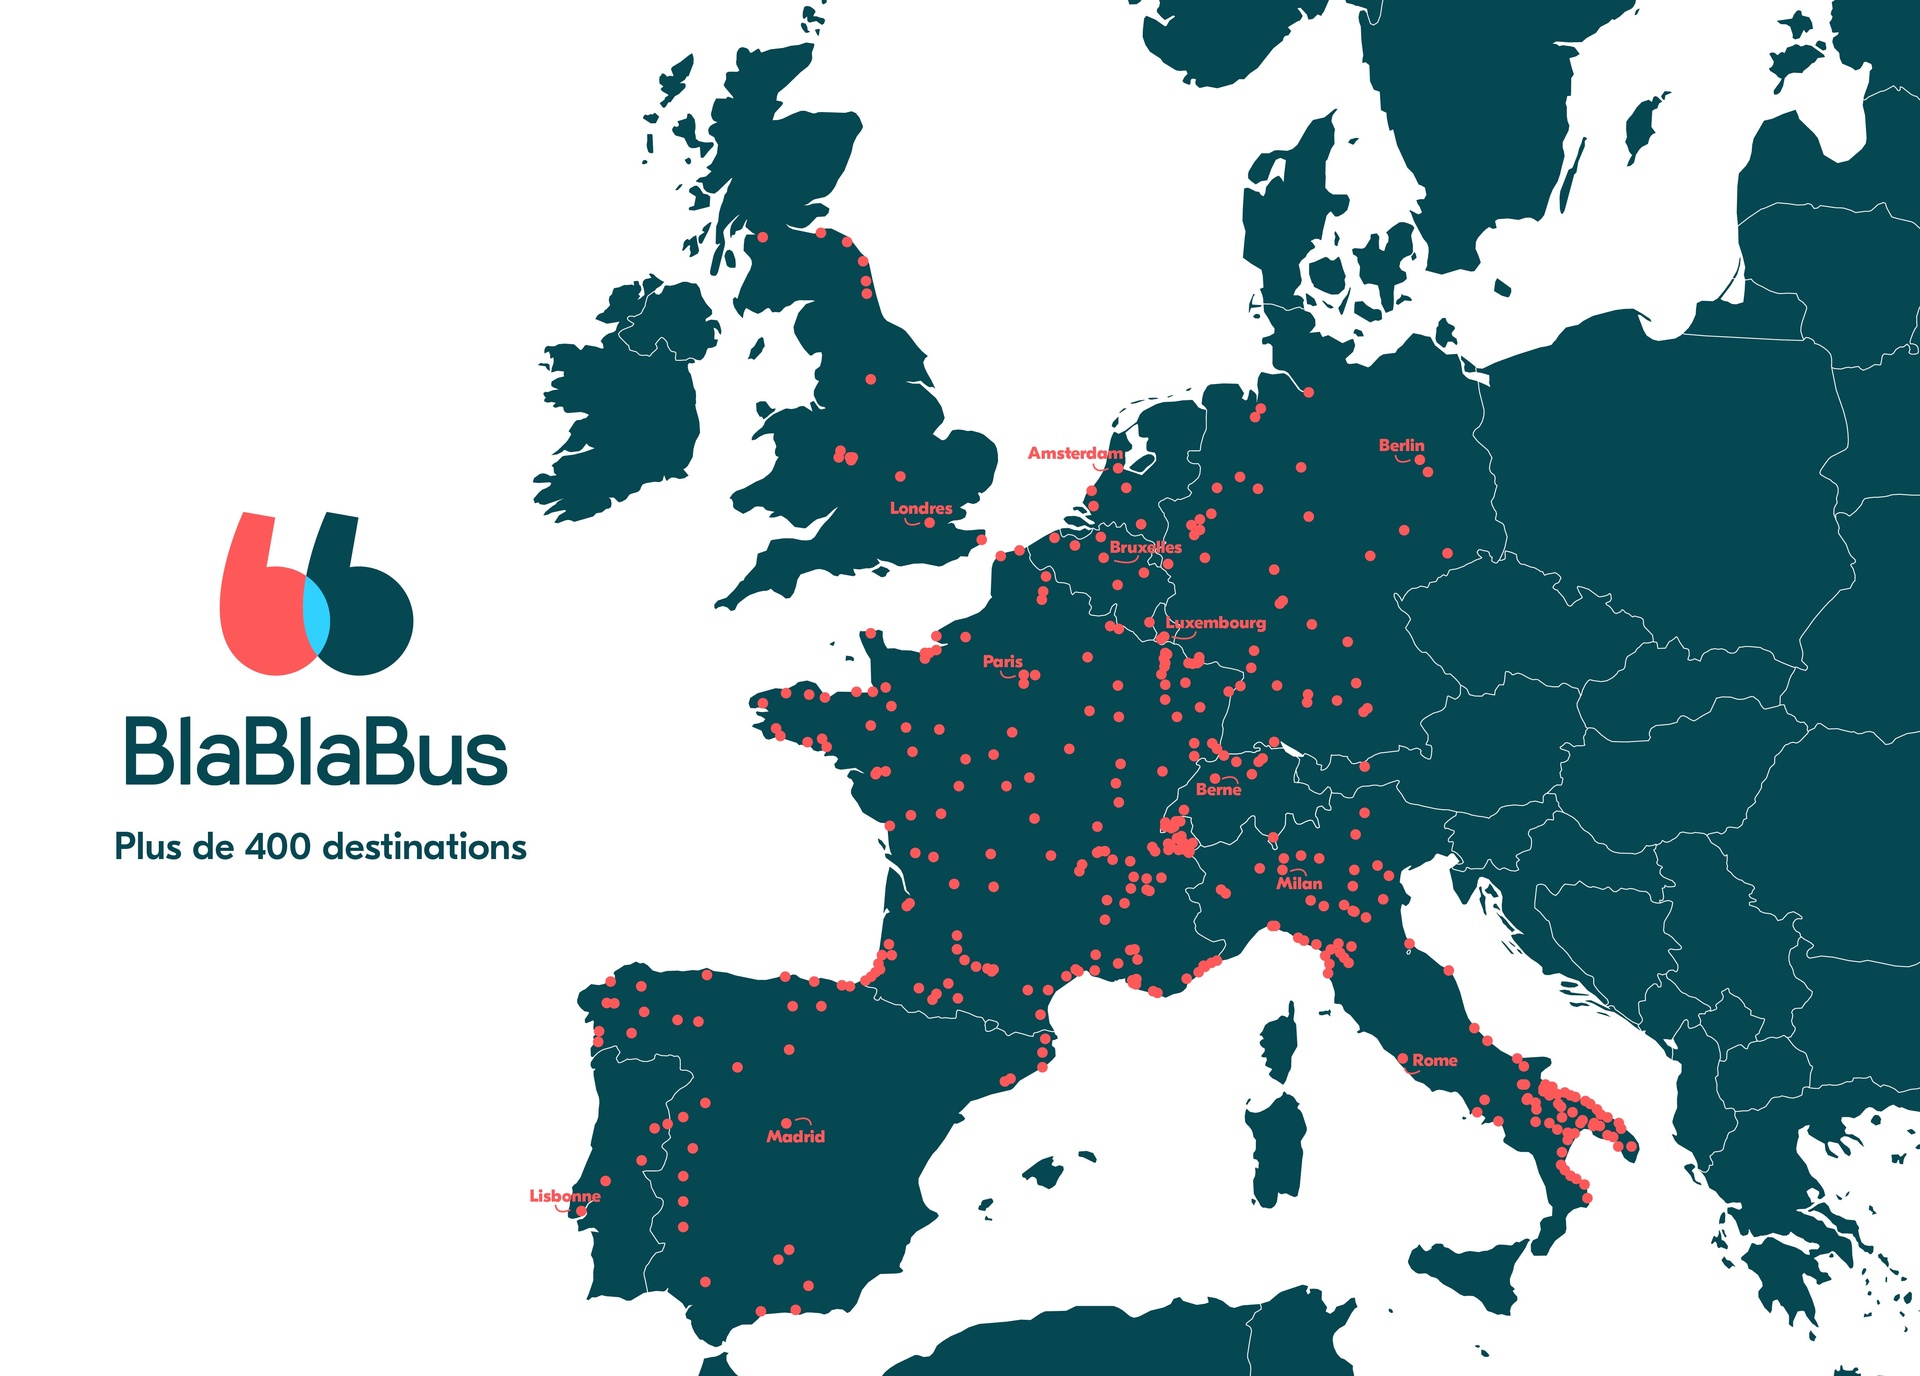 BlaBlaBus lignes de bus, carte du réseau, villes desservies en France et en Europe